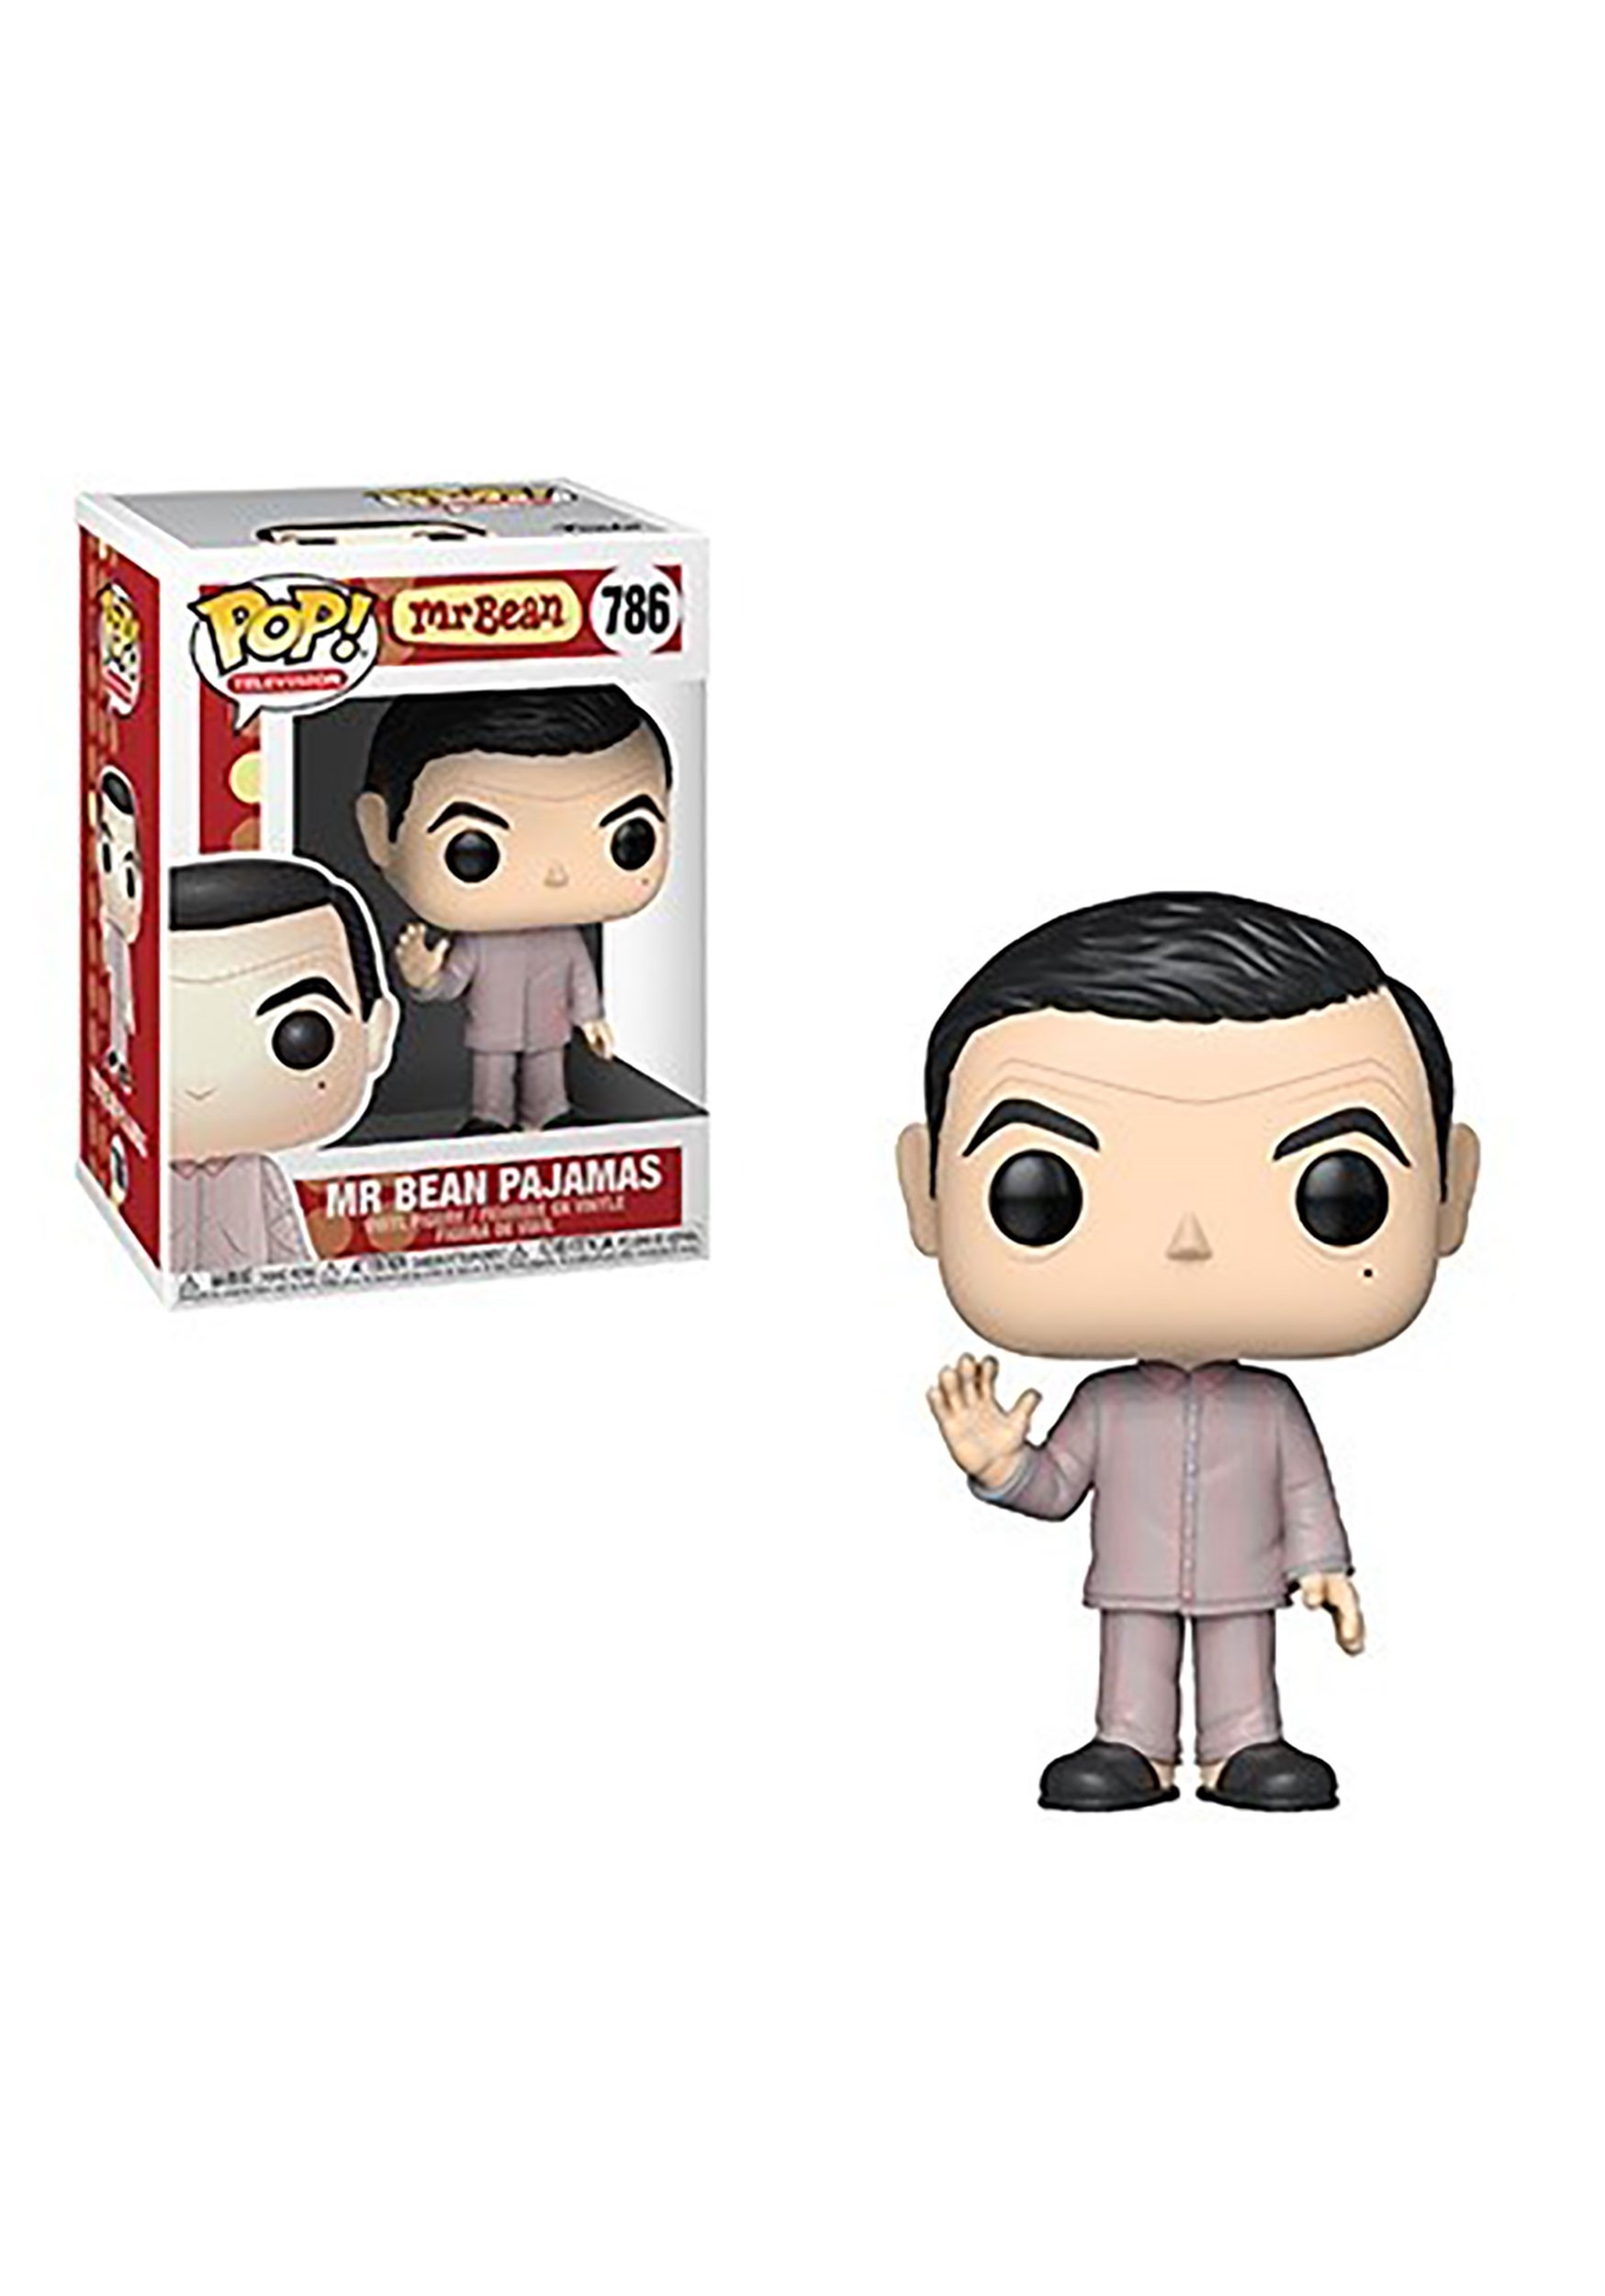 Mr. Bean Pajamas Pop! TV